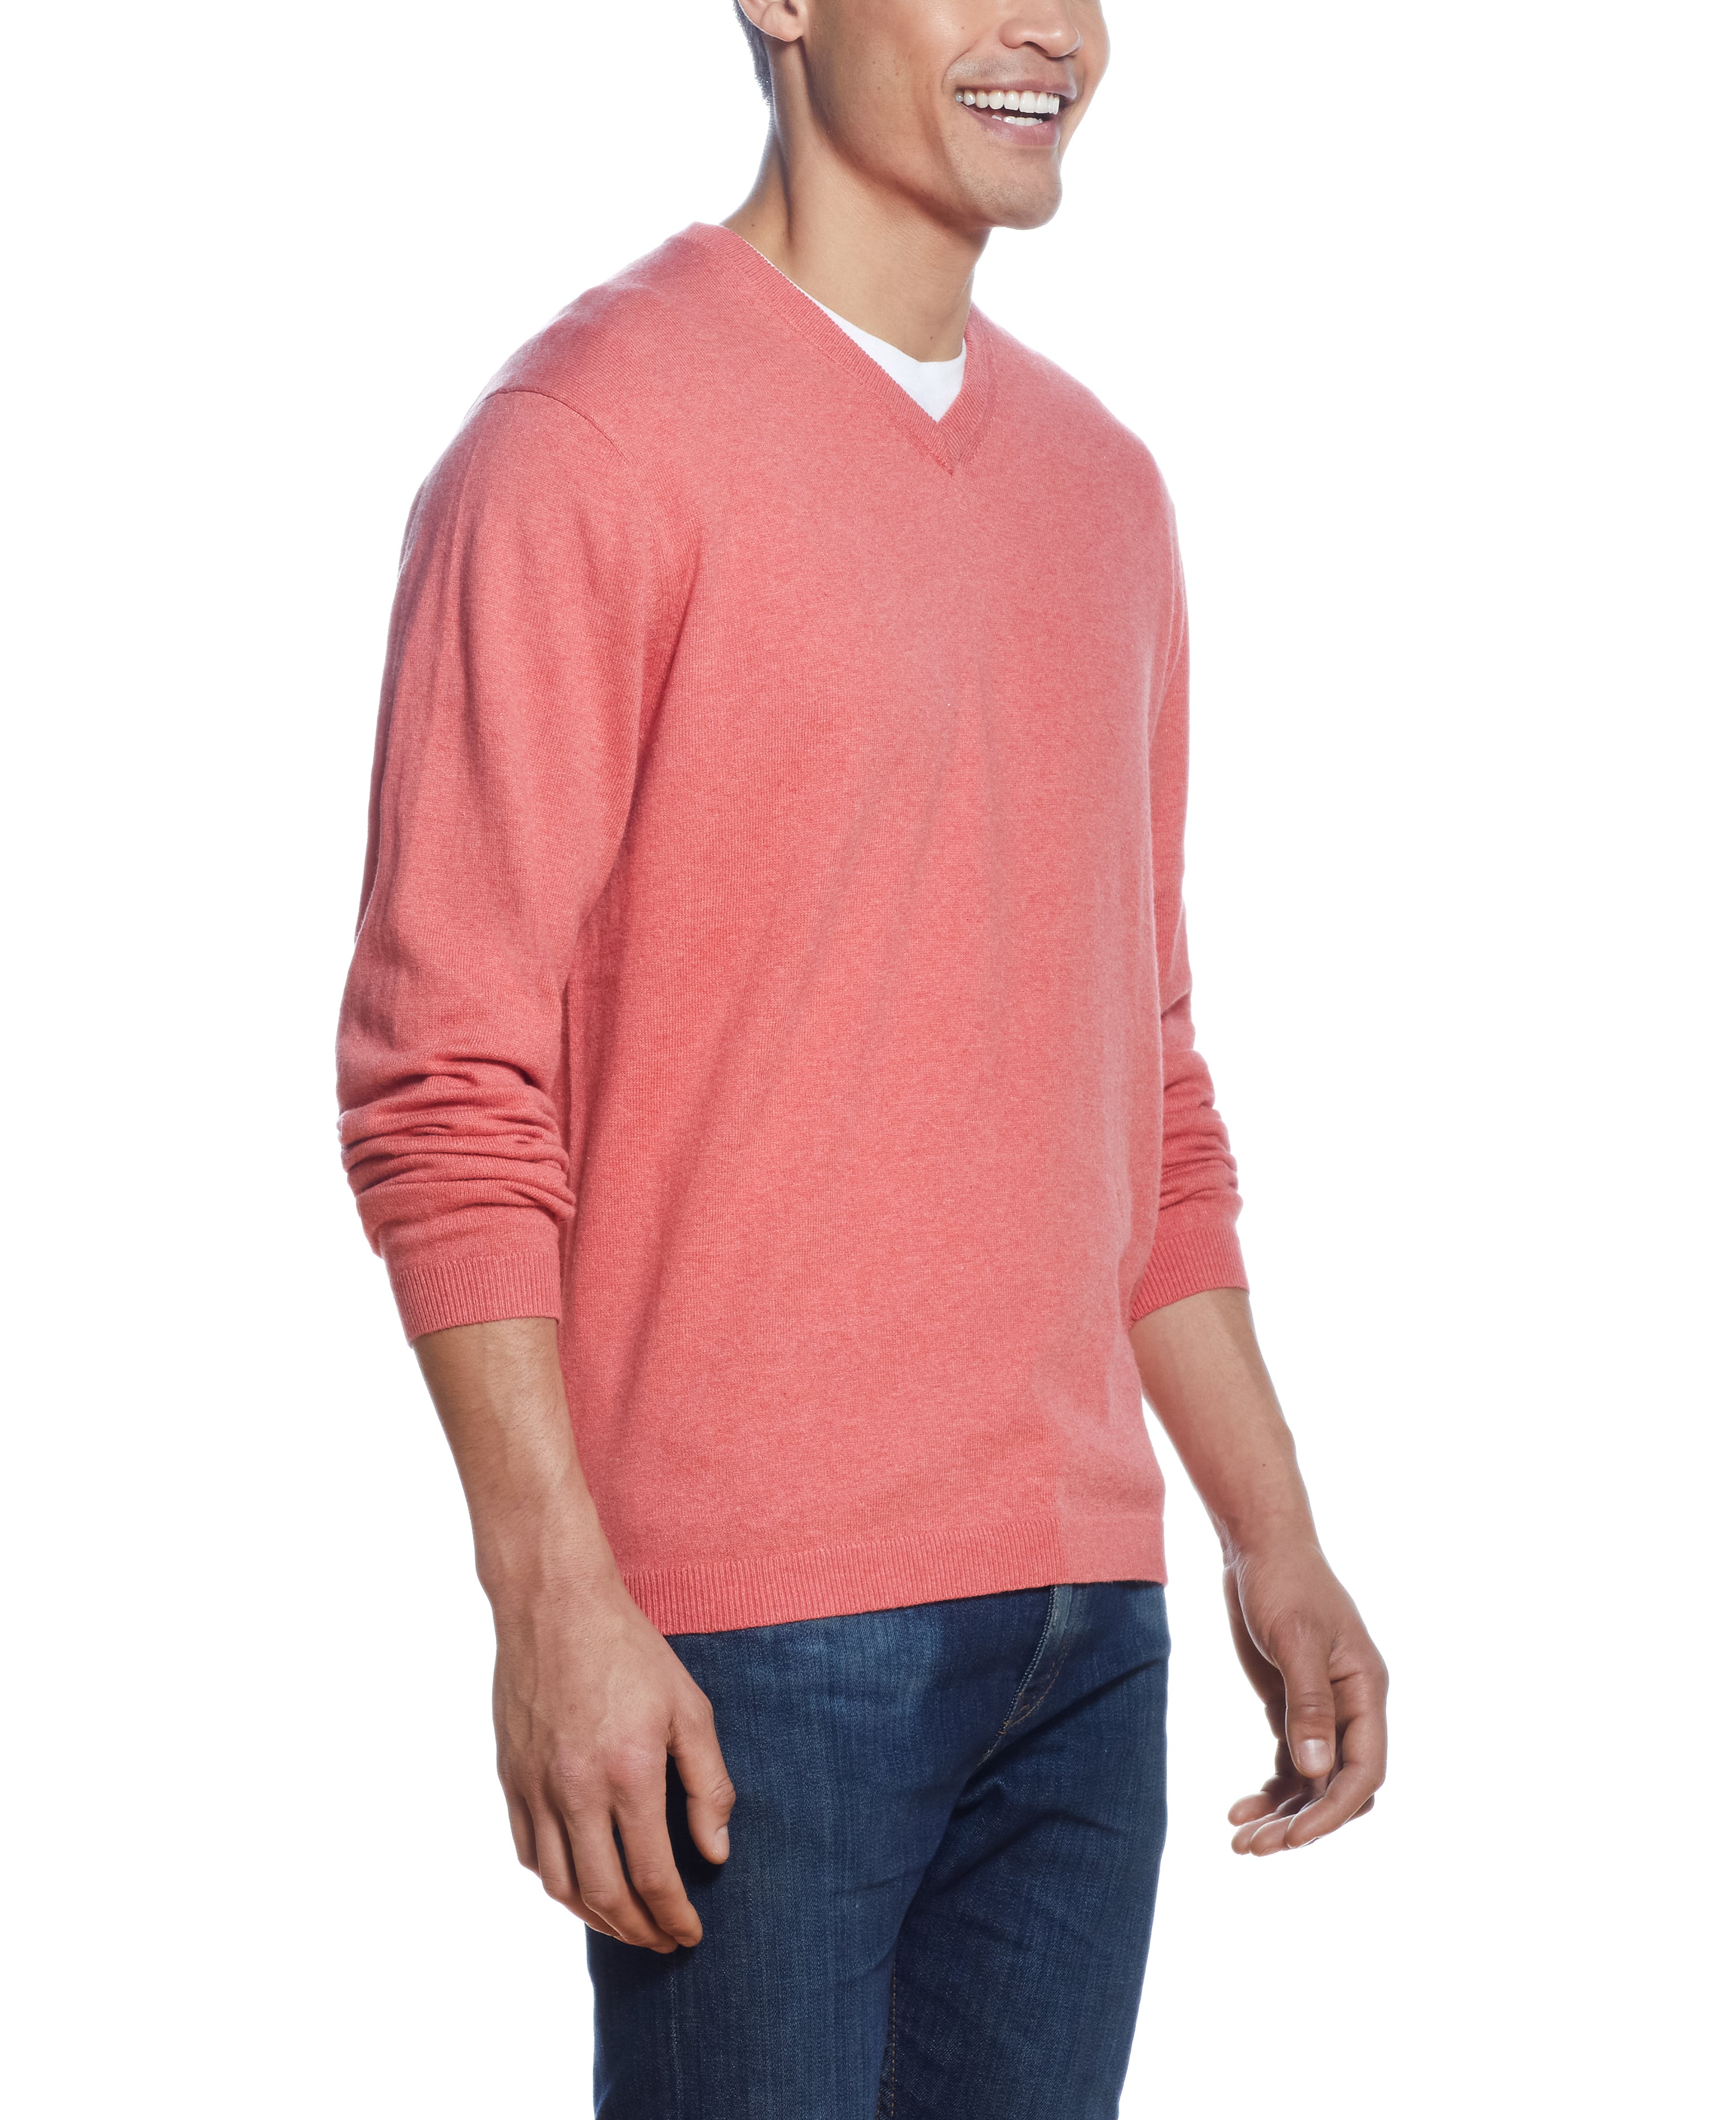 Cotton Cashmere V Neck Sweater in BERMUDA